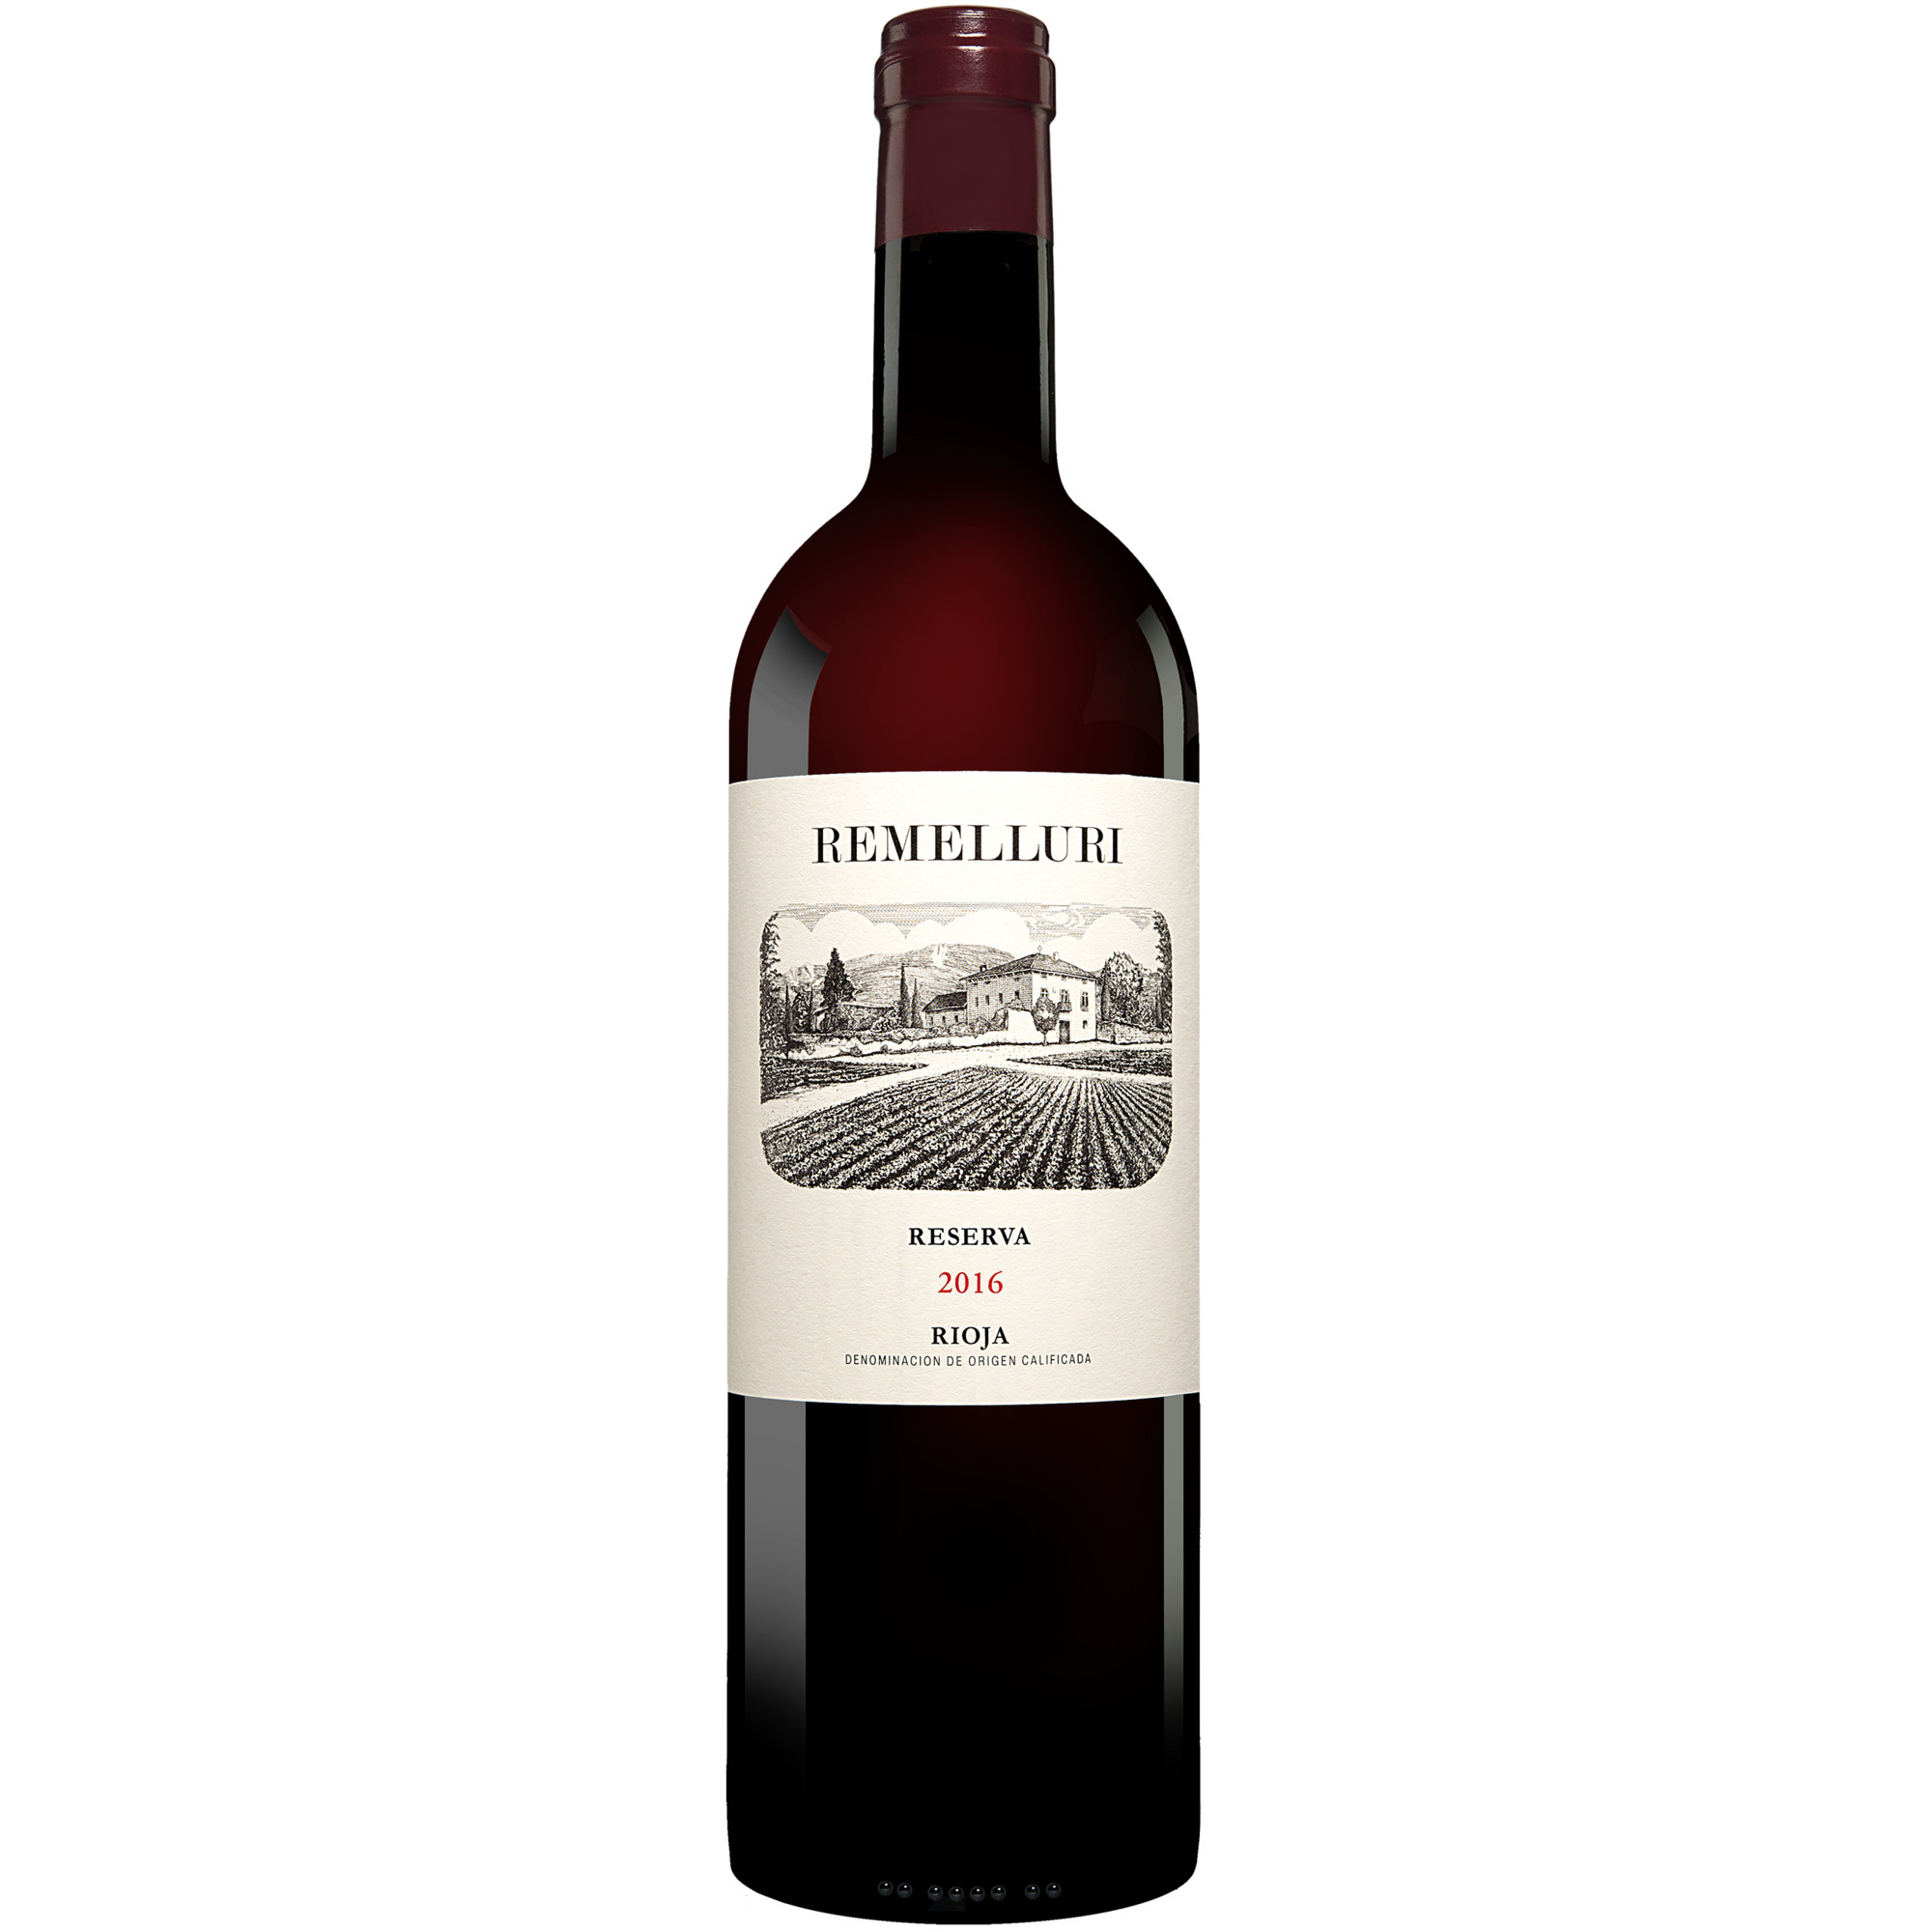 Remelluri Tinto Reserva 2016  014% Vol. Rotwein Trocken aus Spanien